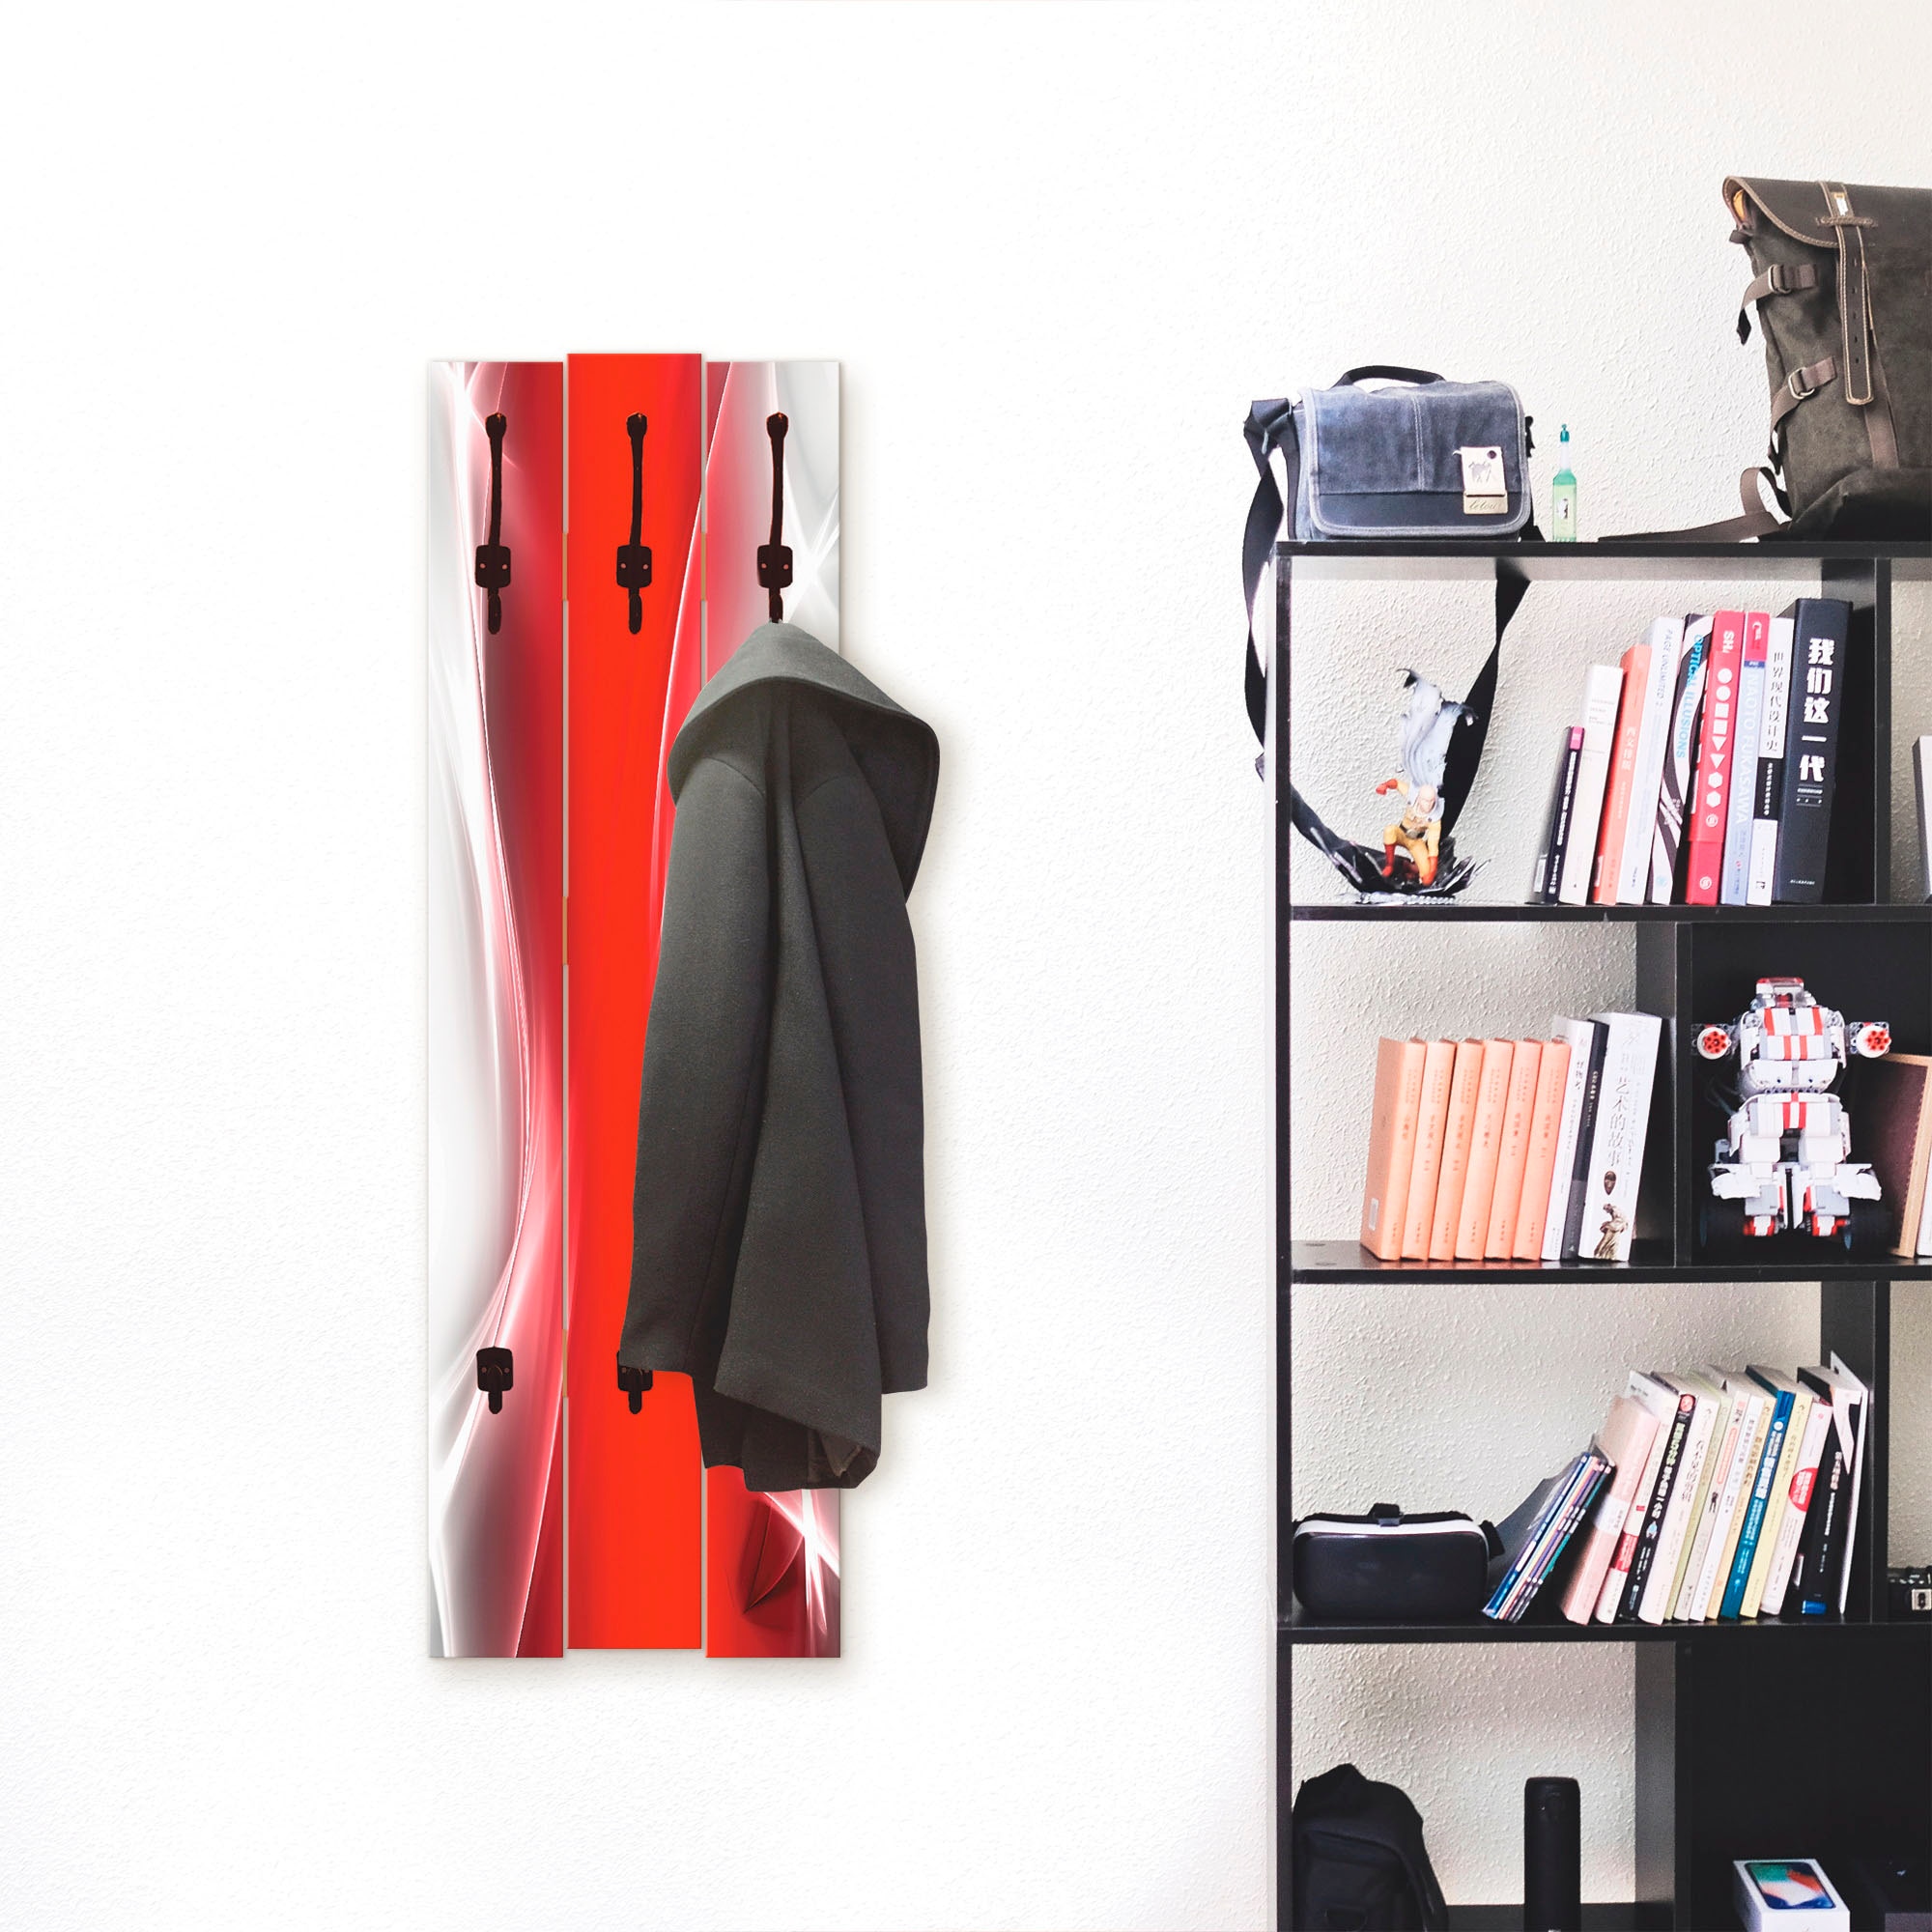 Artland Garderobenleiste »Kreatives Element Rot für Ihr Art-Design«, teilmontiert